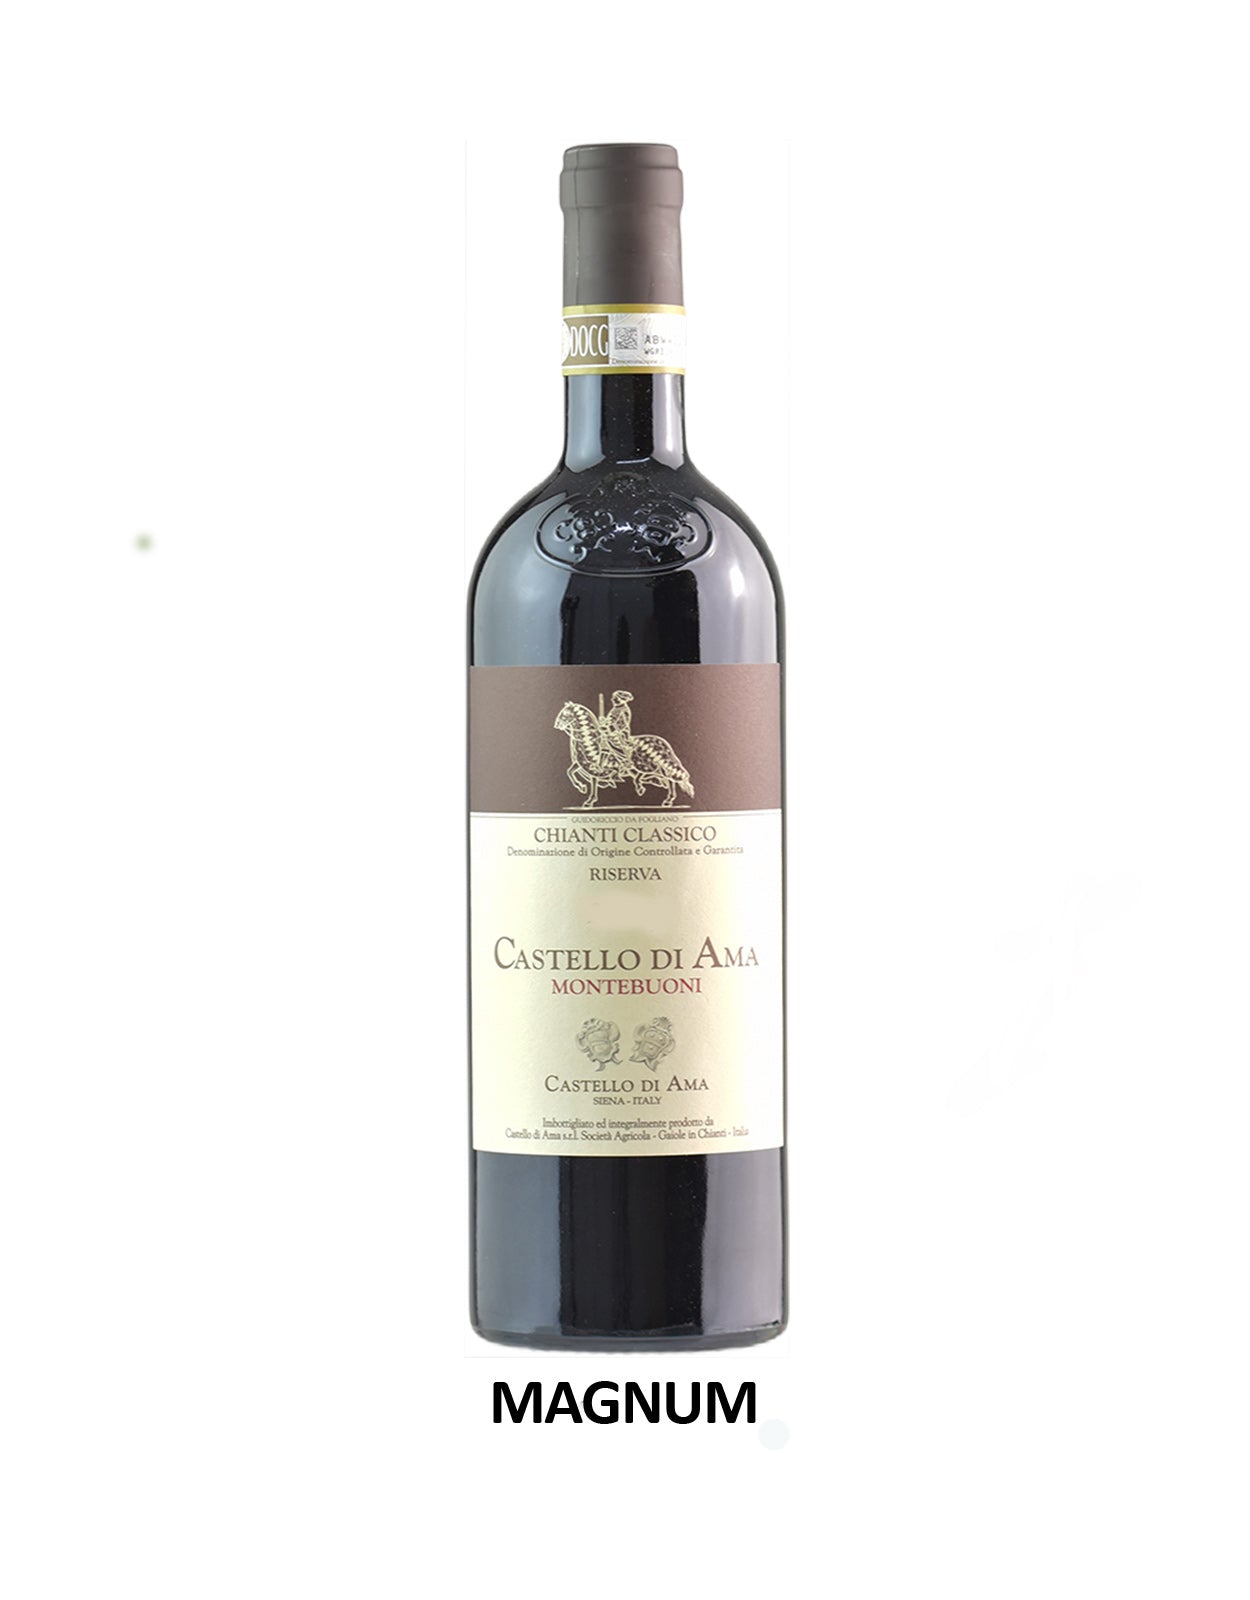 Castello Di Ama Montebuoni Chianti Classico Riserva 2019 - 1.5 Litre Bottle